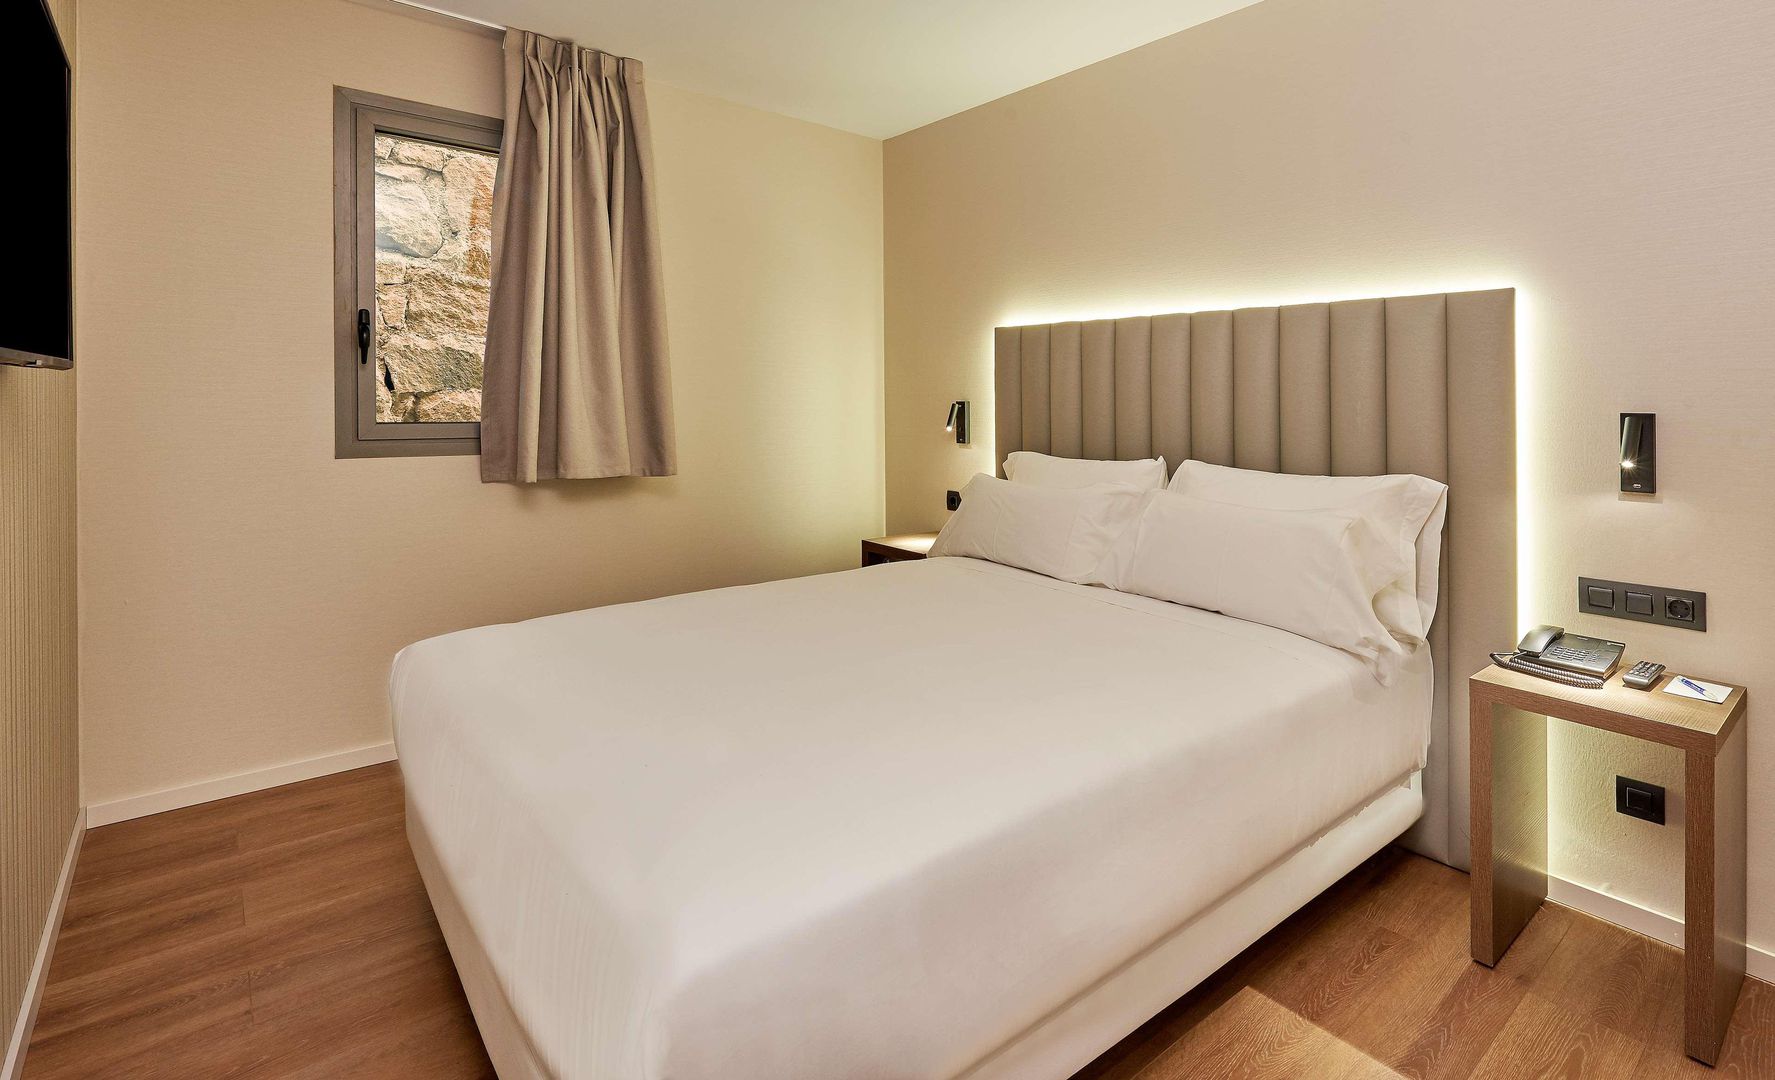 Hotel NH Andorra la Vella (OV)